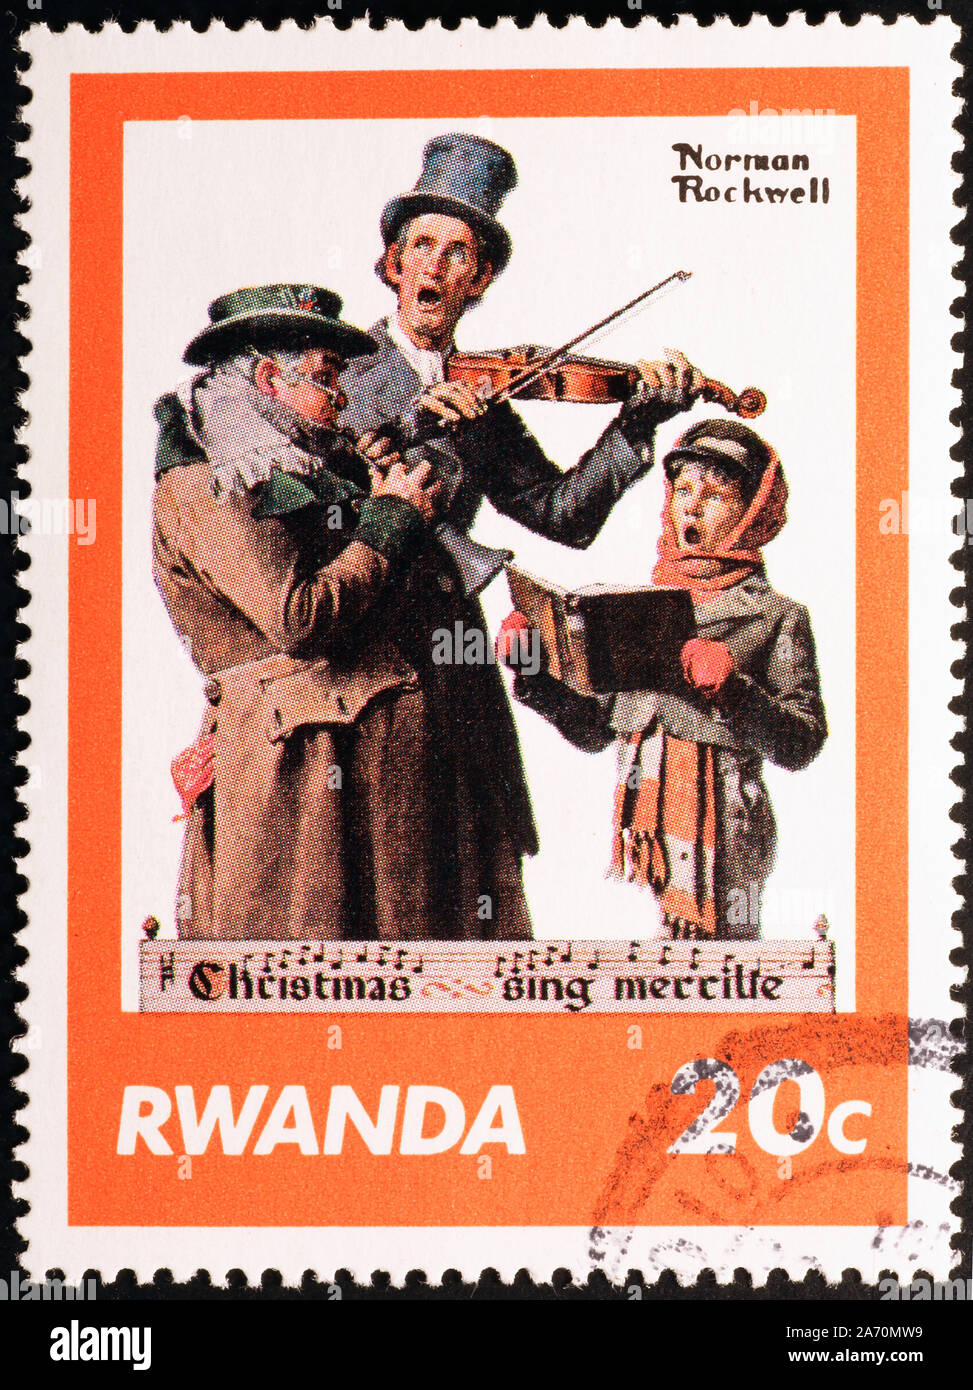 Les chanteurs de Noël par Norman Rockwell sur timbre-poste Banque D'Images